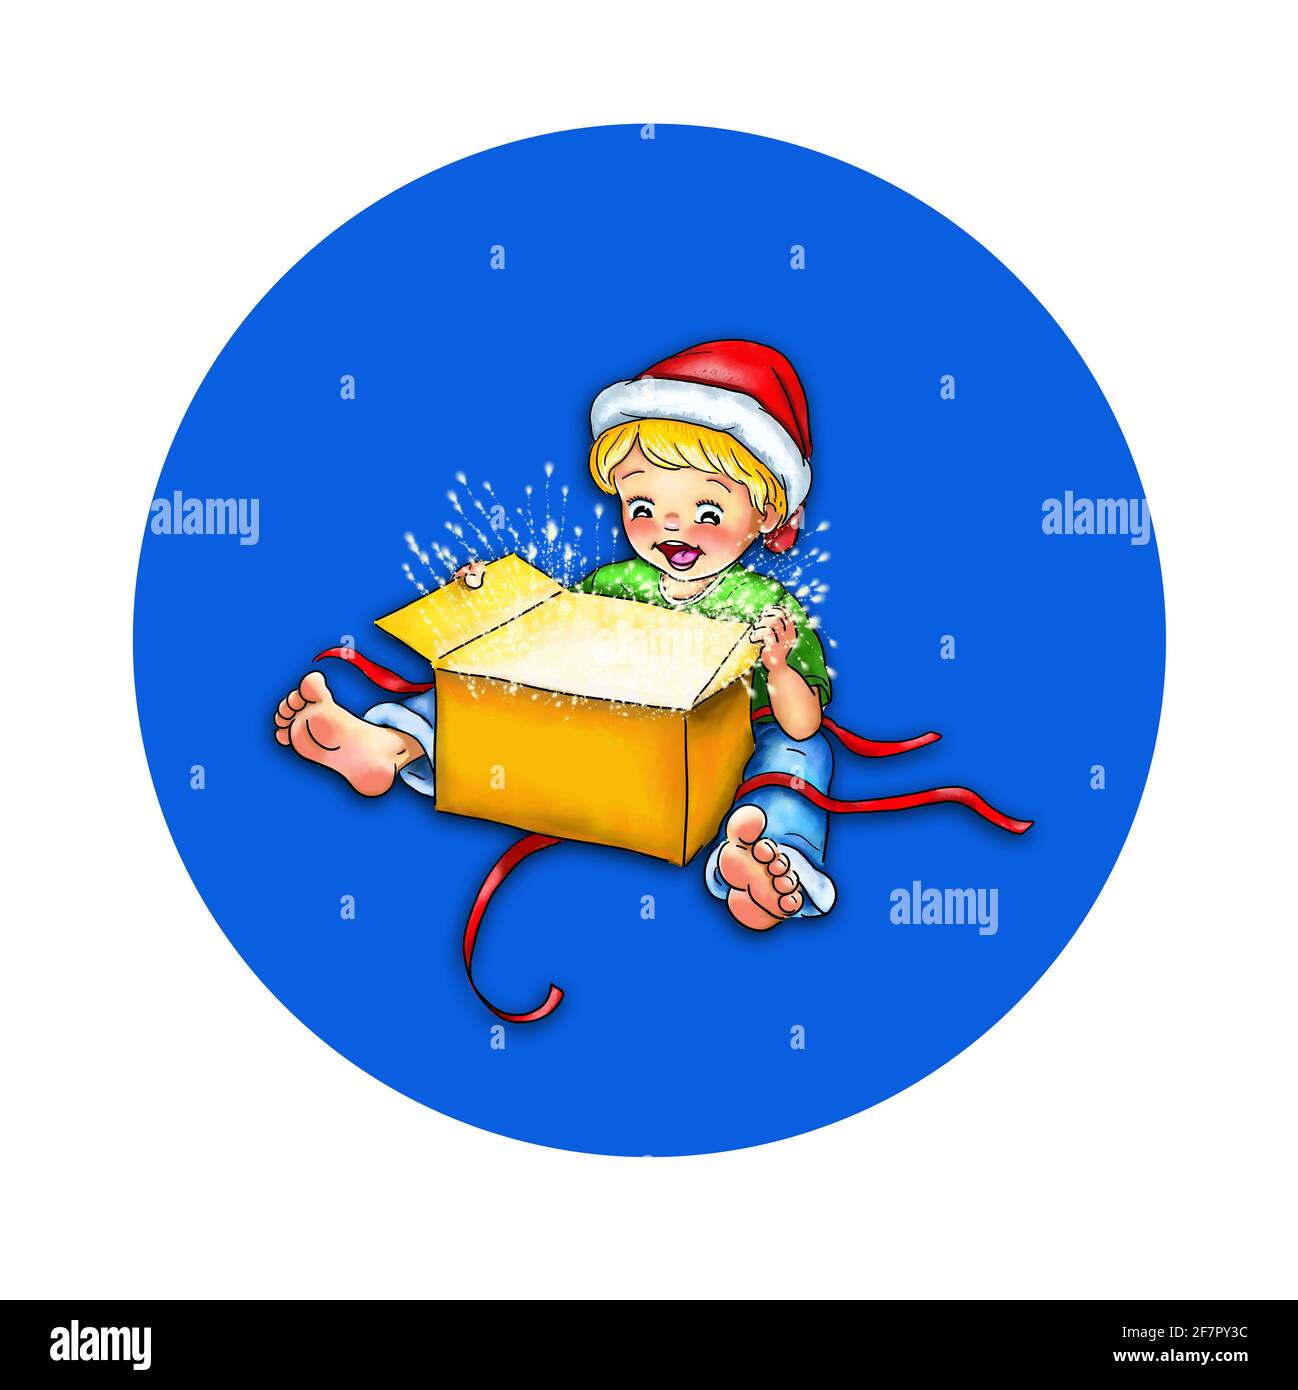 Kleinkind Junge mit Weihnachtsmann Hut sitzt barfuß mit einem Ausgepacktes Geschenk vor ihm Glanz Faszination fasziniert überrascht Freude lachen Sterne leuchten Stockfoto